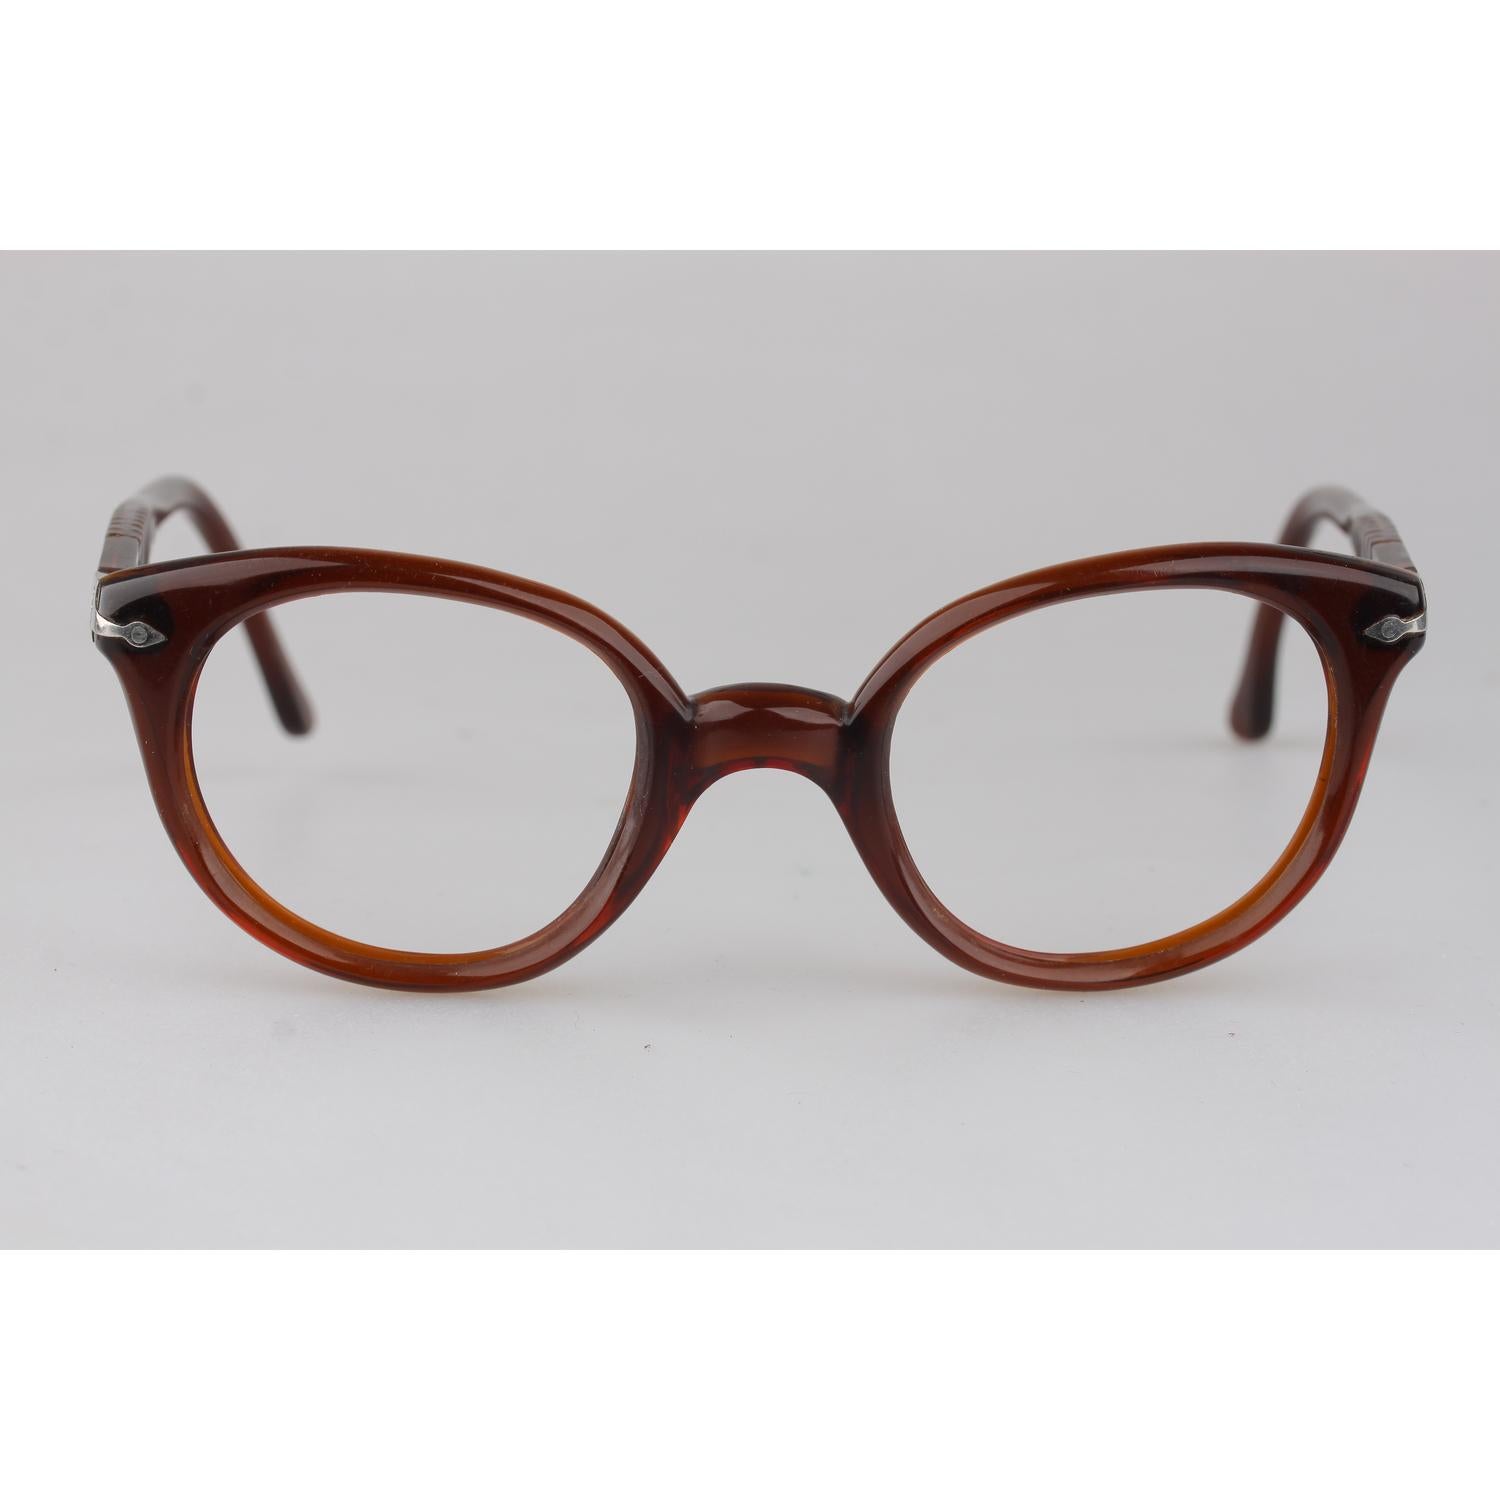 1940s mens eyeglasses